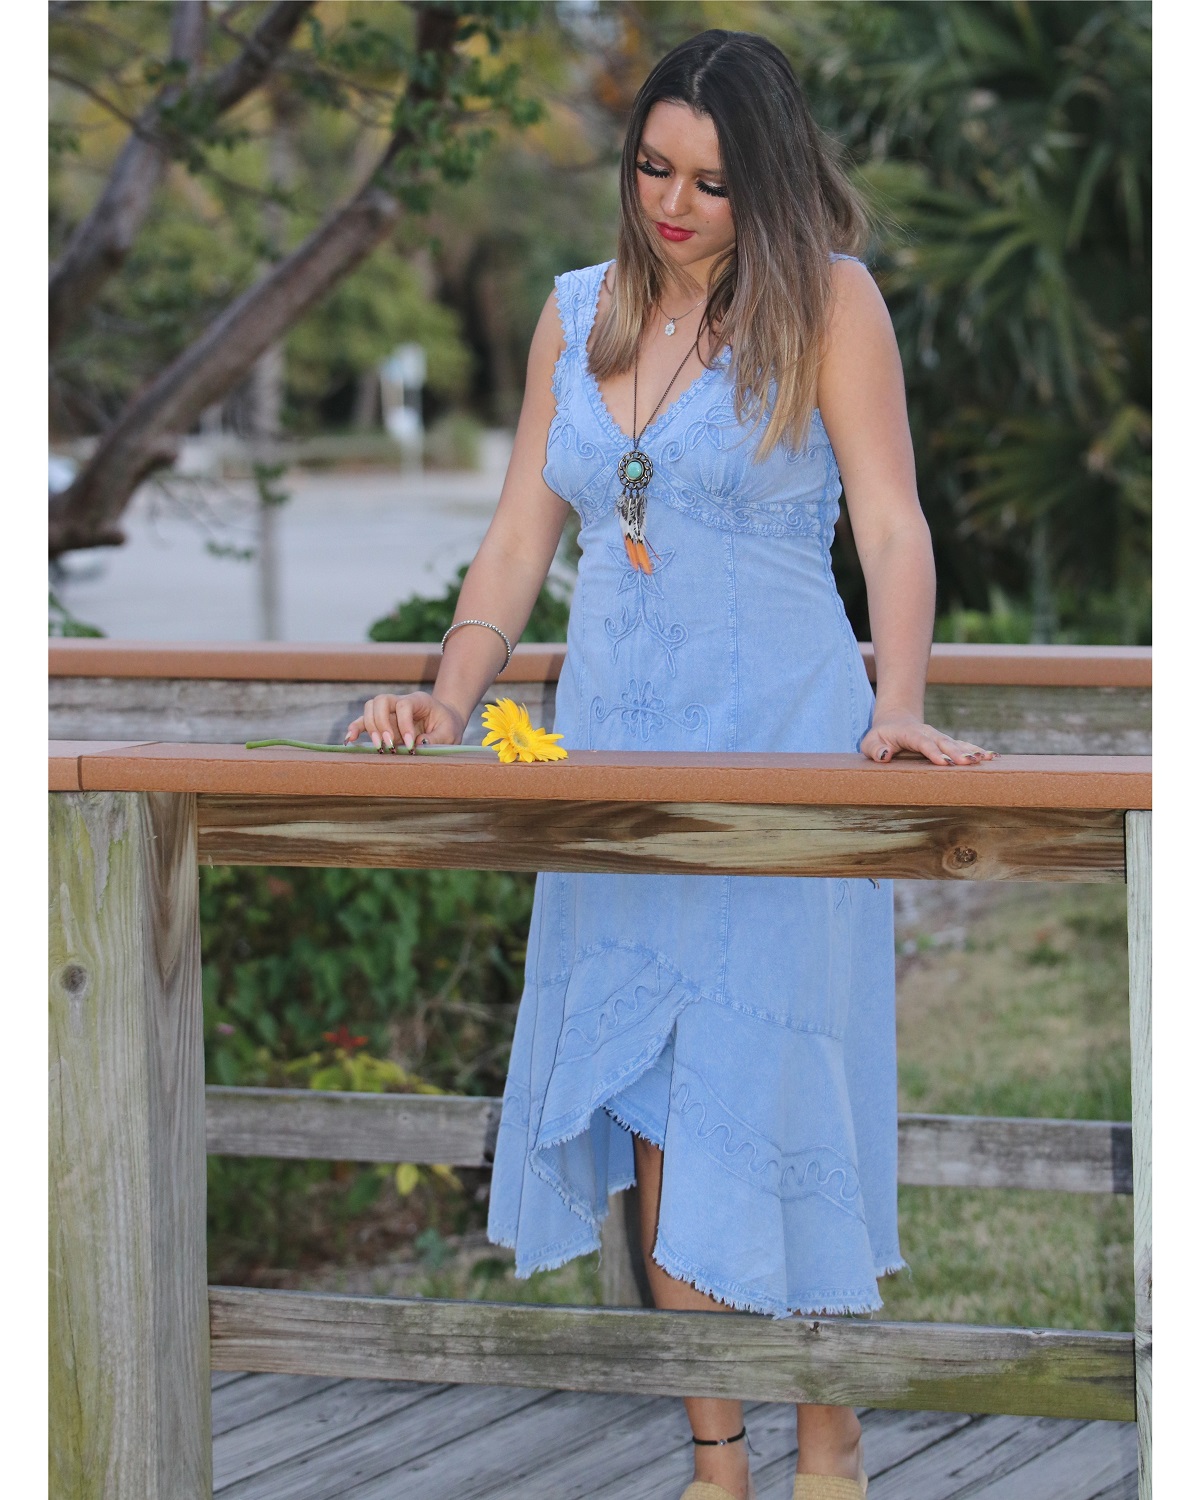 Caribbean Beauty Sundress – Light Jean – Model on Boardwalk – Front View